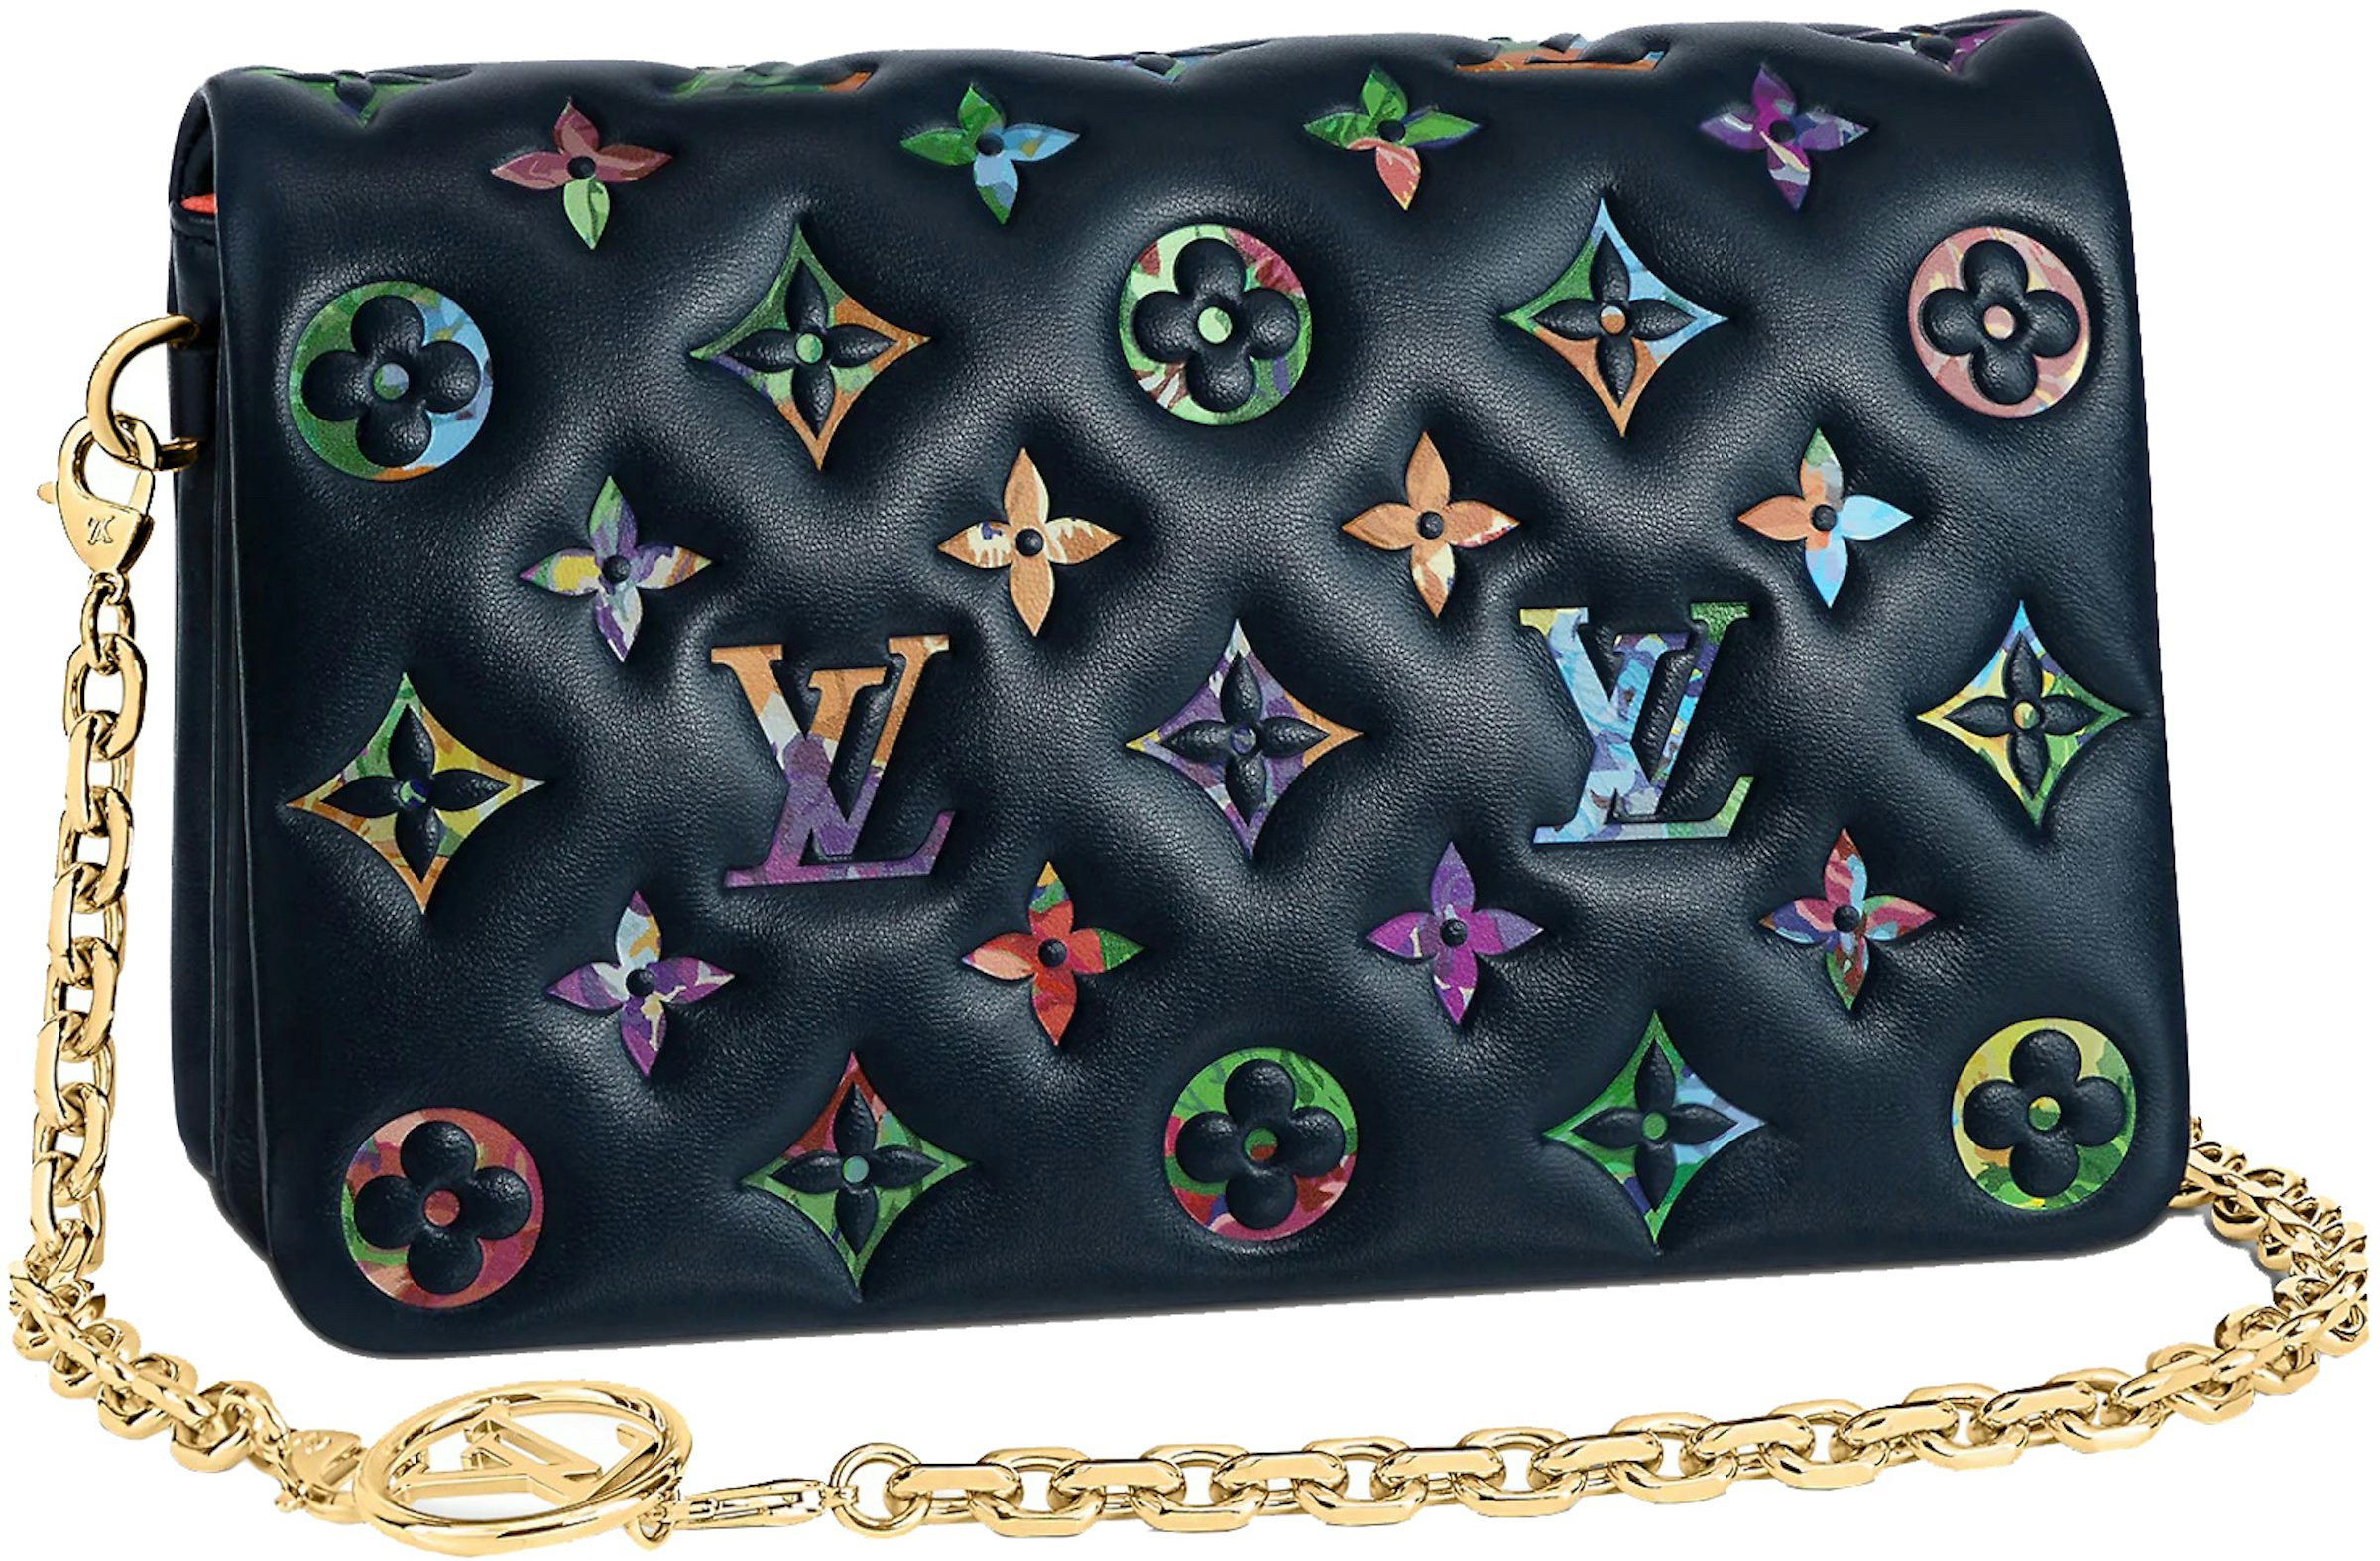 Louis Vuitton POCHETTE COUSSIN unboxing/LV- Chanel WOC Size Comparison. 